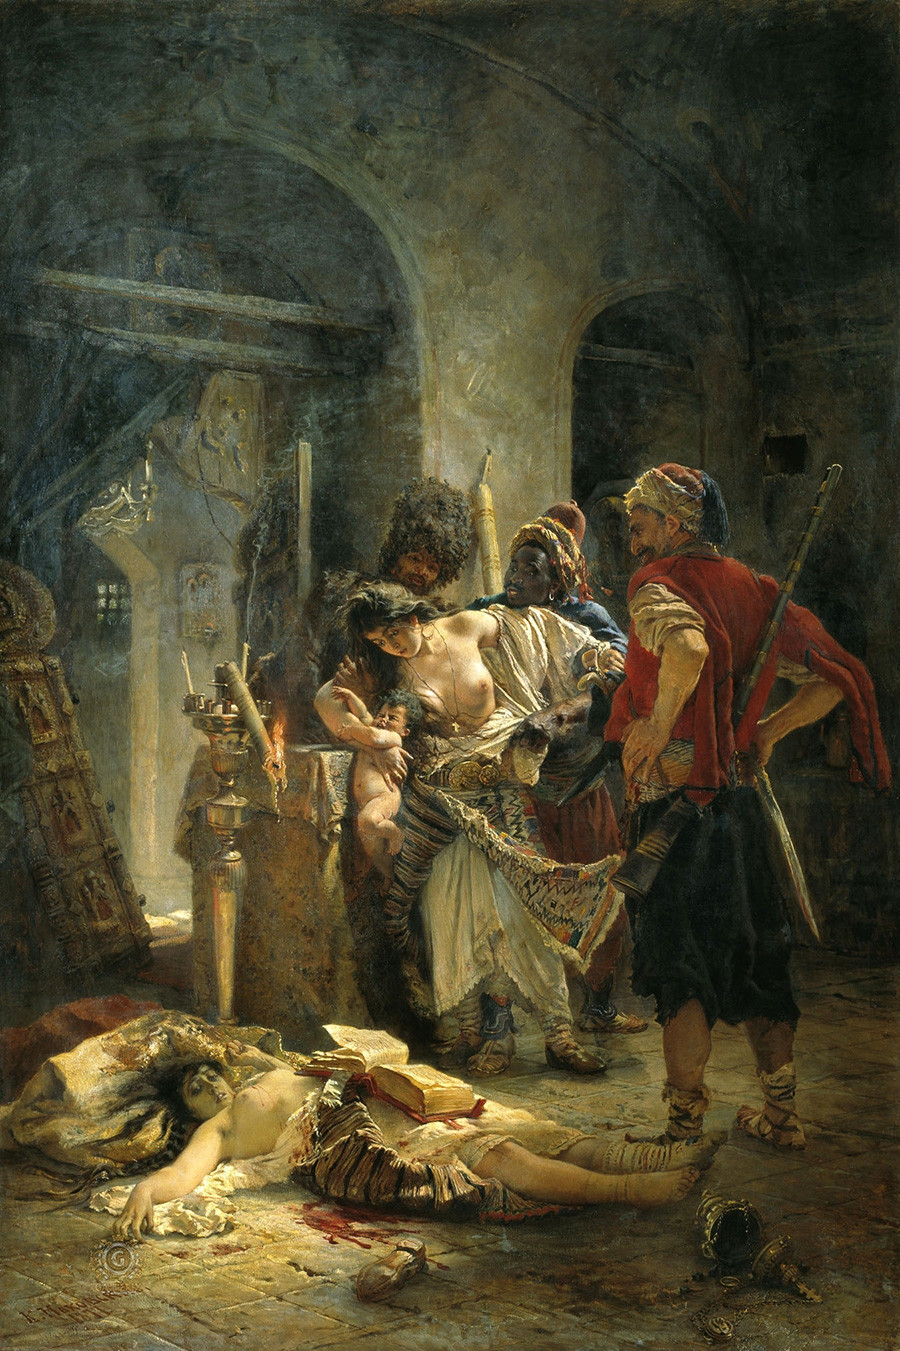 Les Martyres bulgares, 1877. Constantin Makovski

